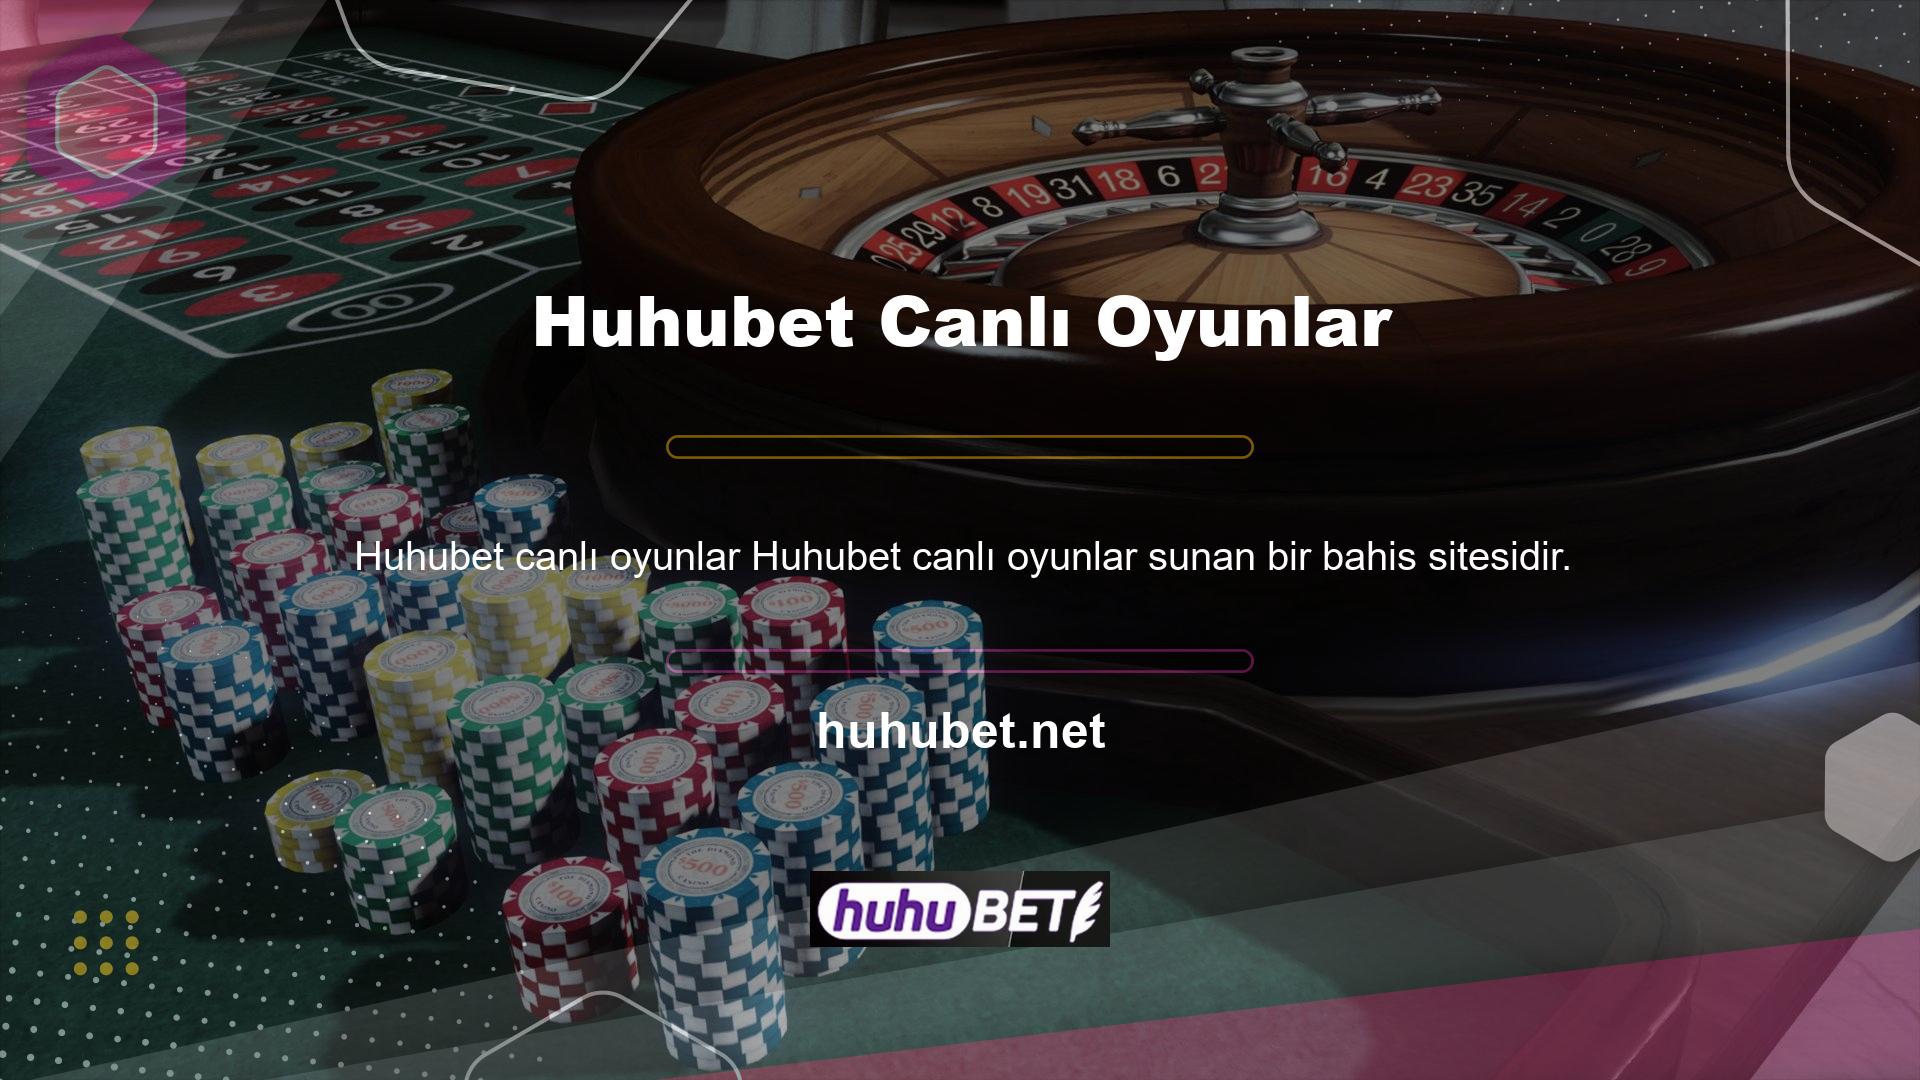 Yüzlerce casino oyununun yer aldığı bir bahis sitesi işleten Huhubet, sadece bahis oyunları değil aynı zamanda canlı bahis oyunları ve canlı oyunlar da sunan bir şirkettir